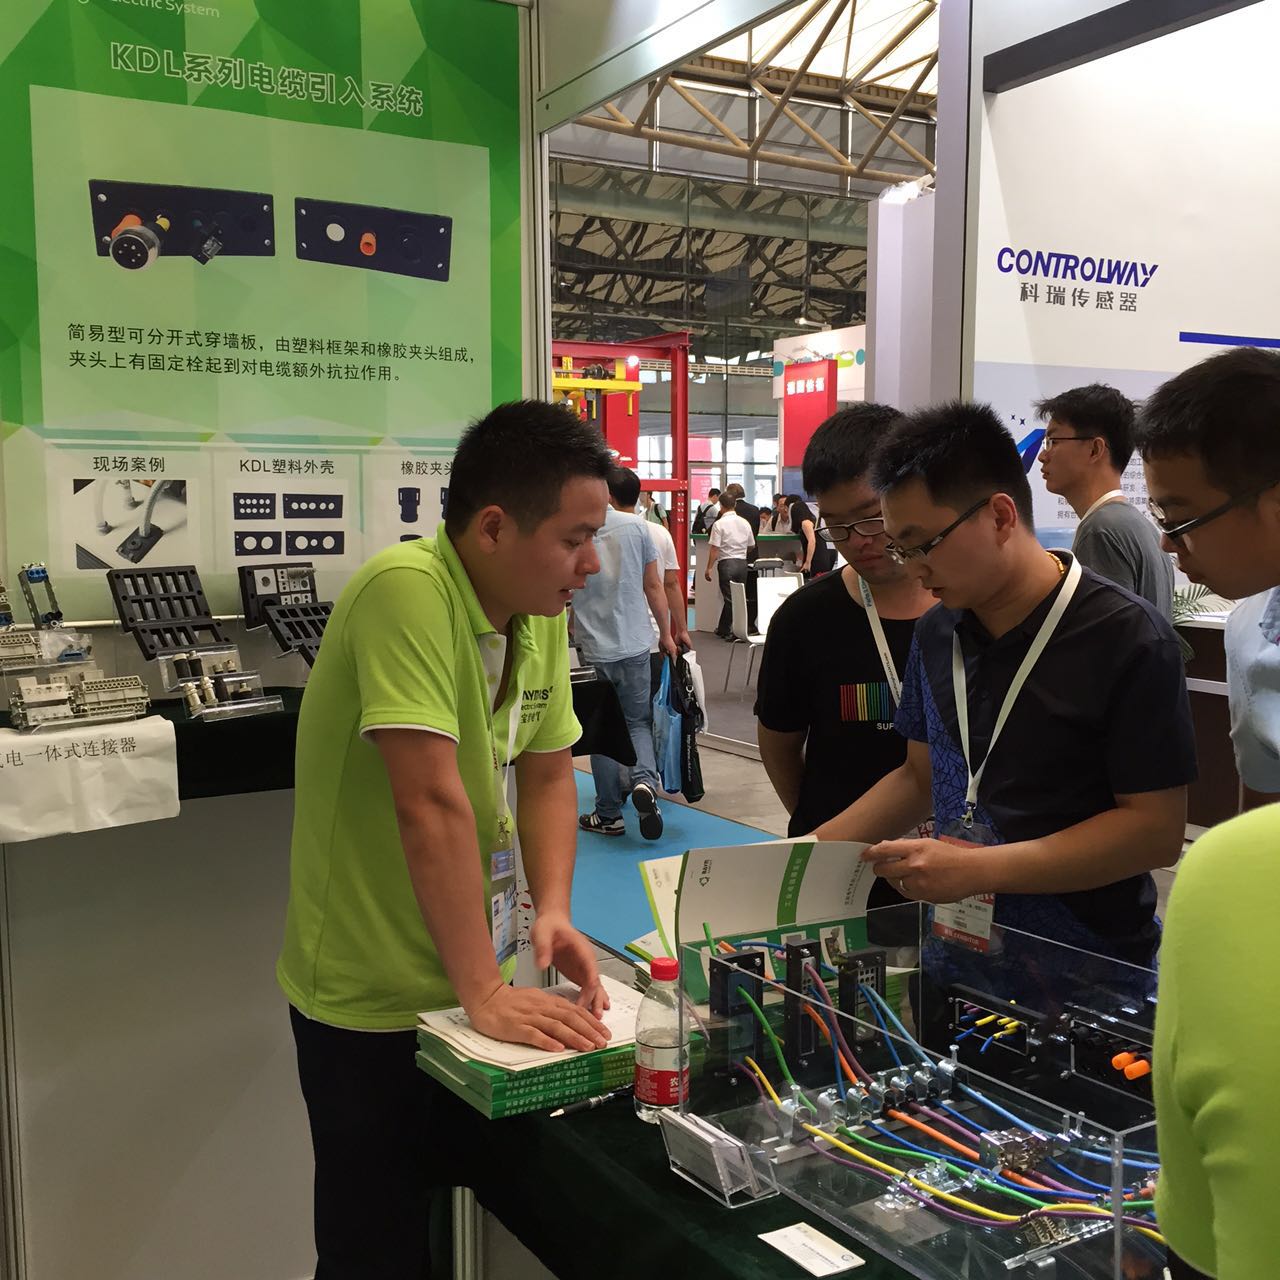 祝贺宝岩电气（BAYMRS）“第十届上海国际工业装配与传输技术展”展出圆满成功！